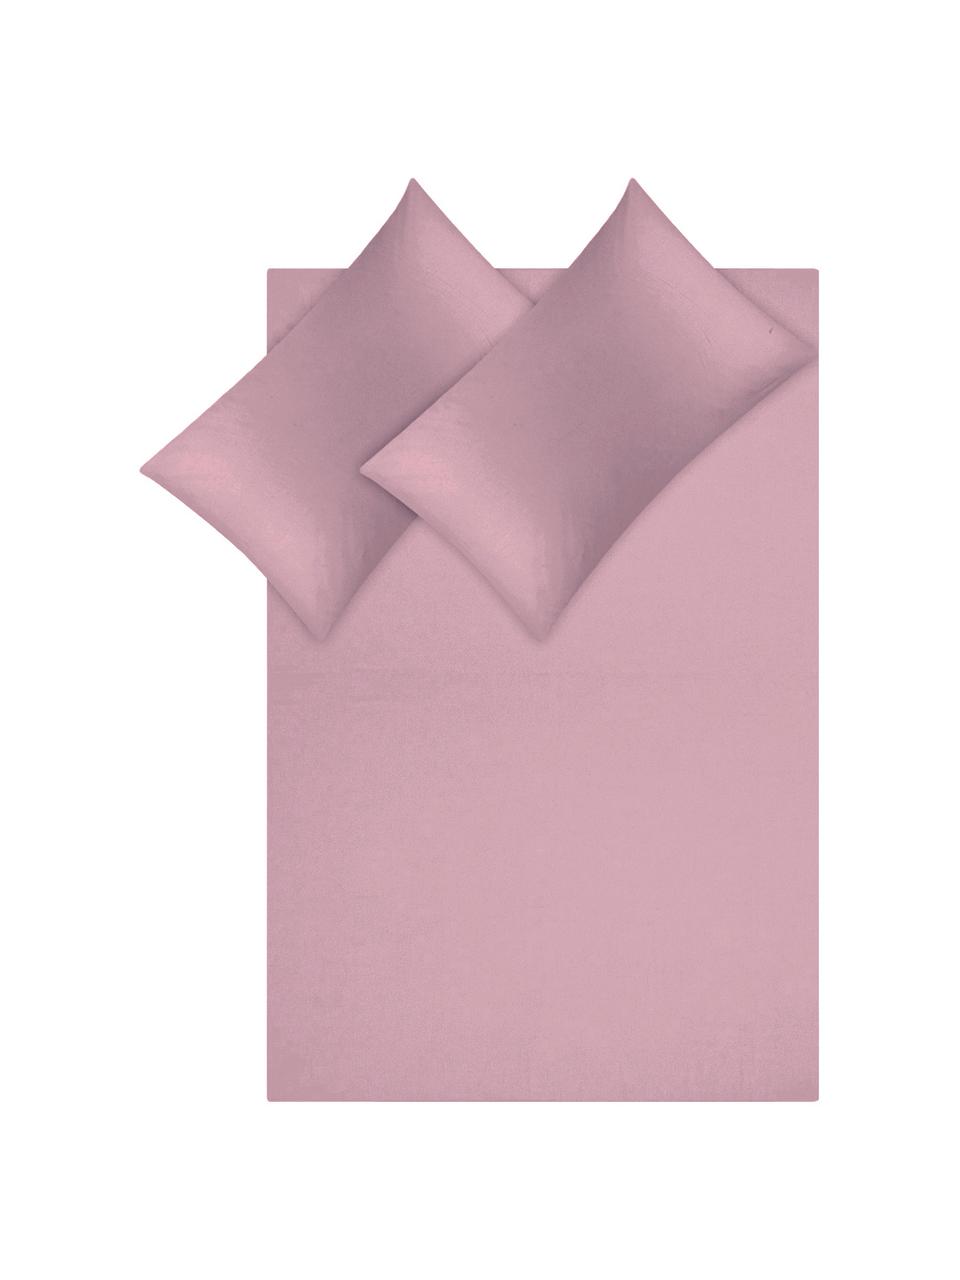 Parure copripiumino in raso di cotone Comfort, Malva, 155 x 200 cm + 1 federa 50 x 80 cm